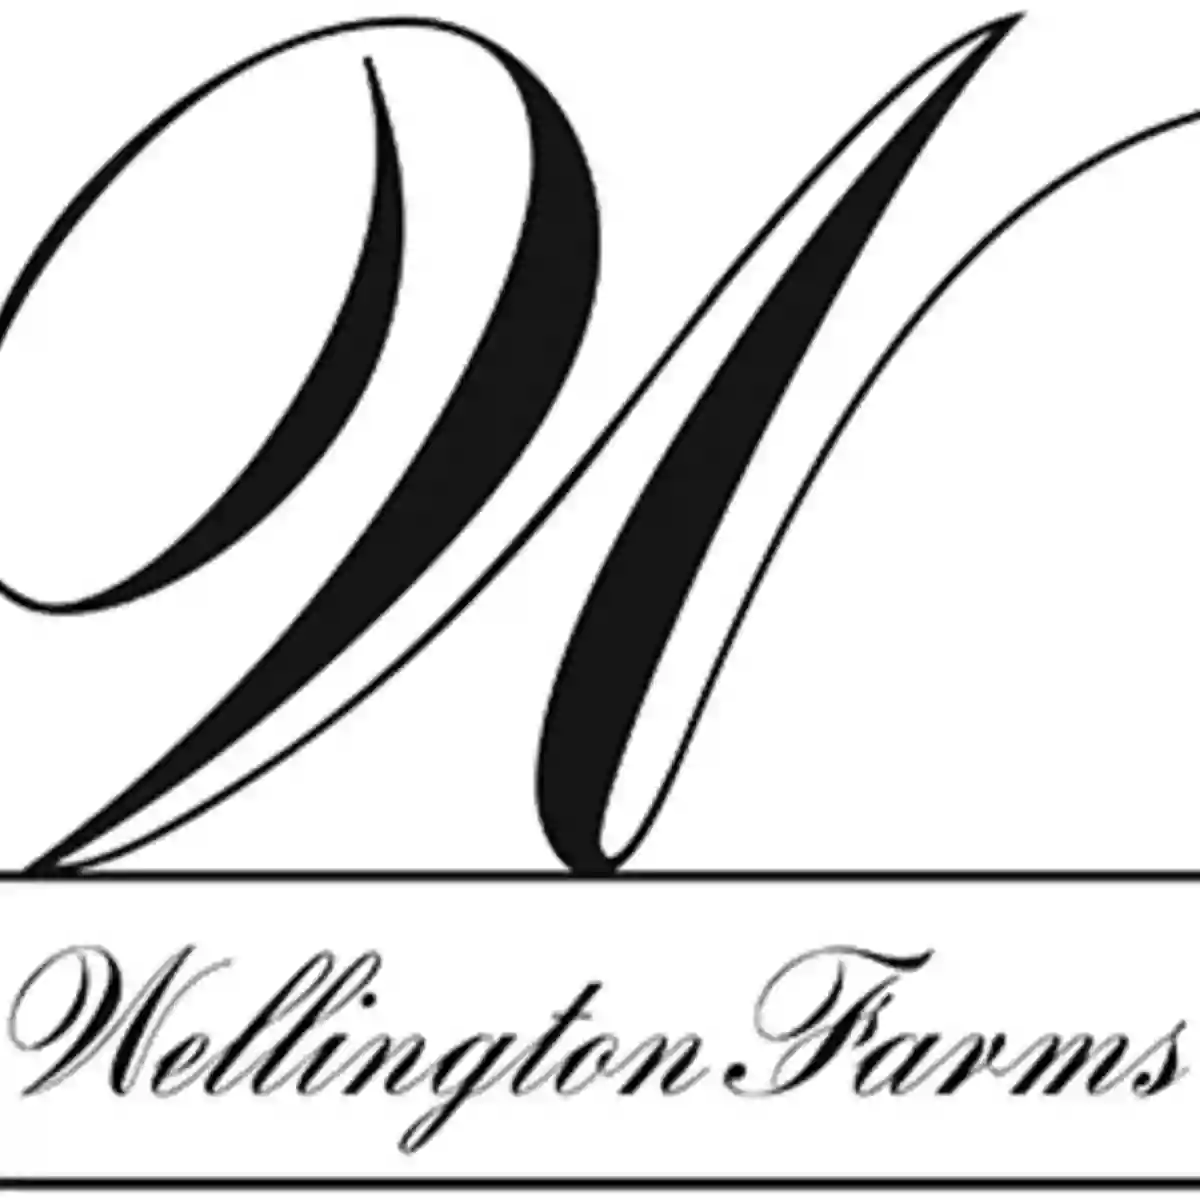 Wellington Farms